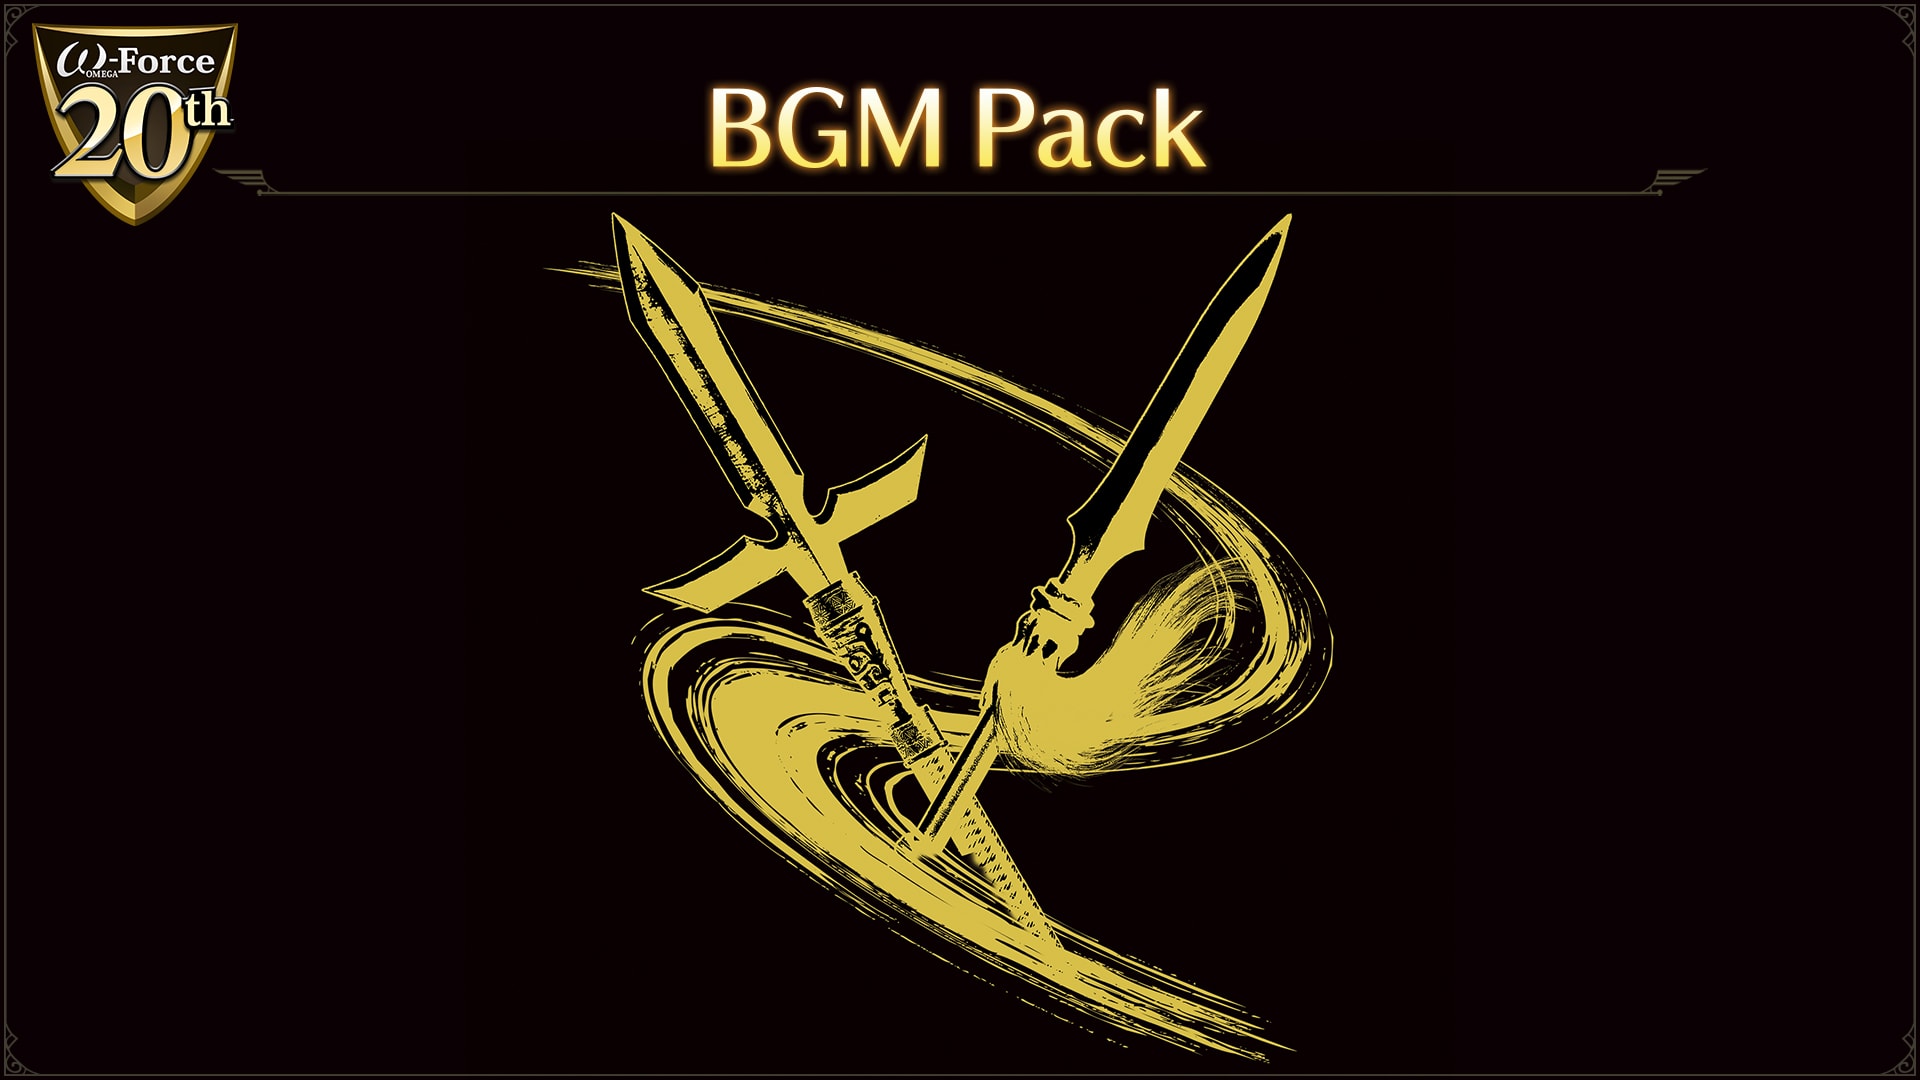 ω-Force 20th Anniversary Concert BGM Pack